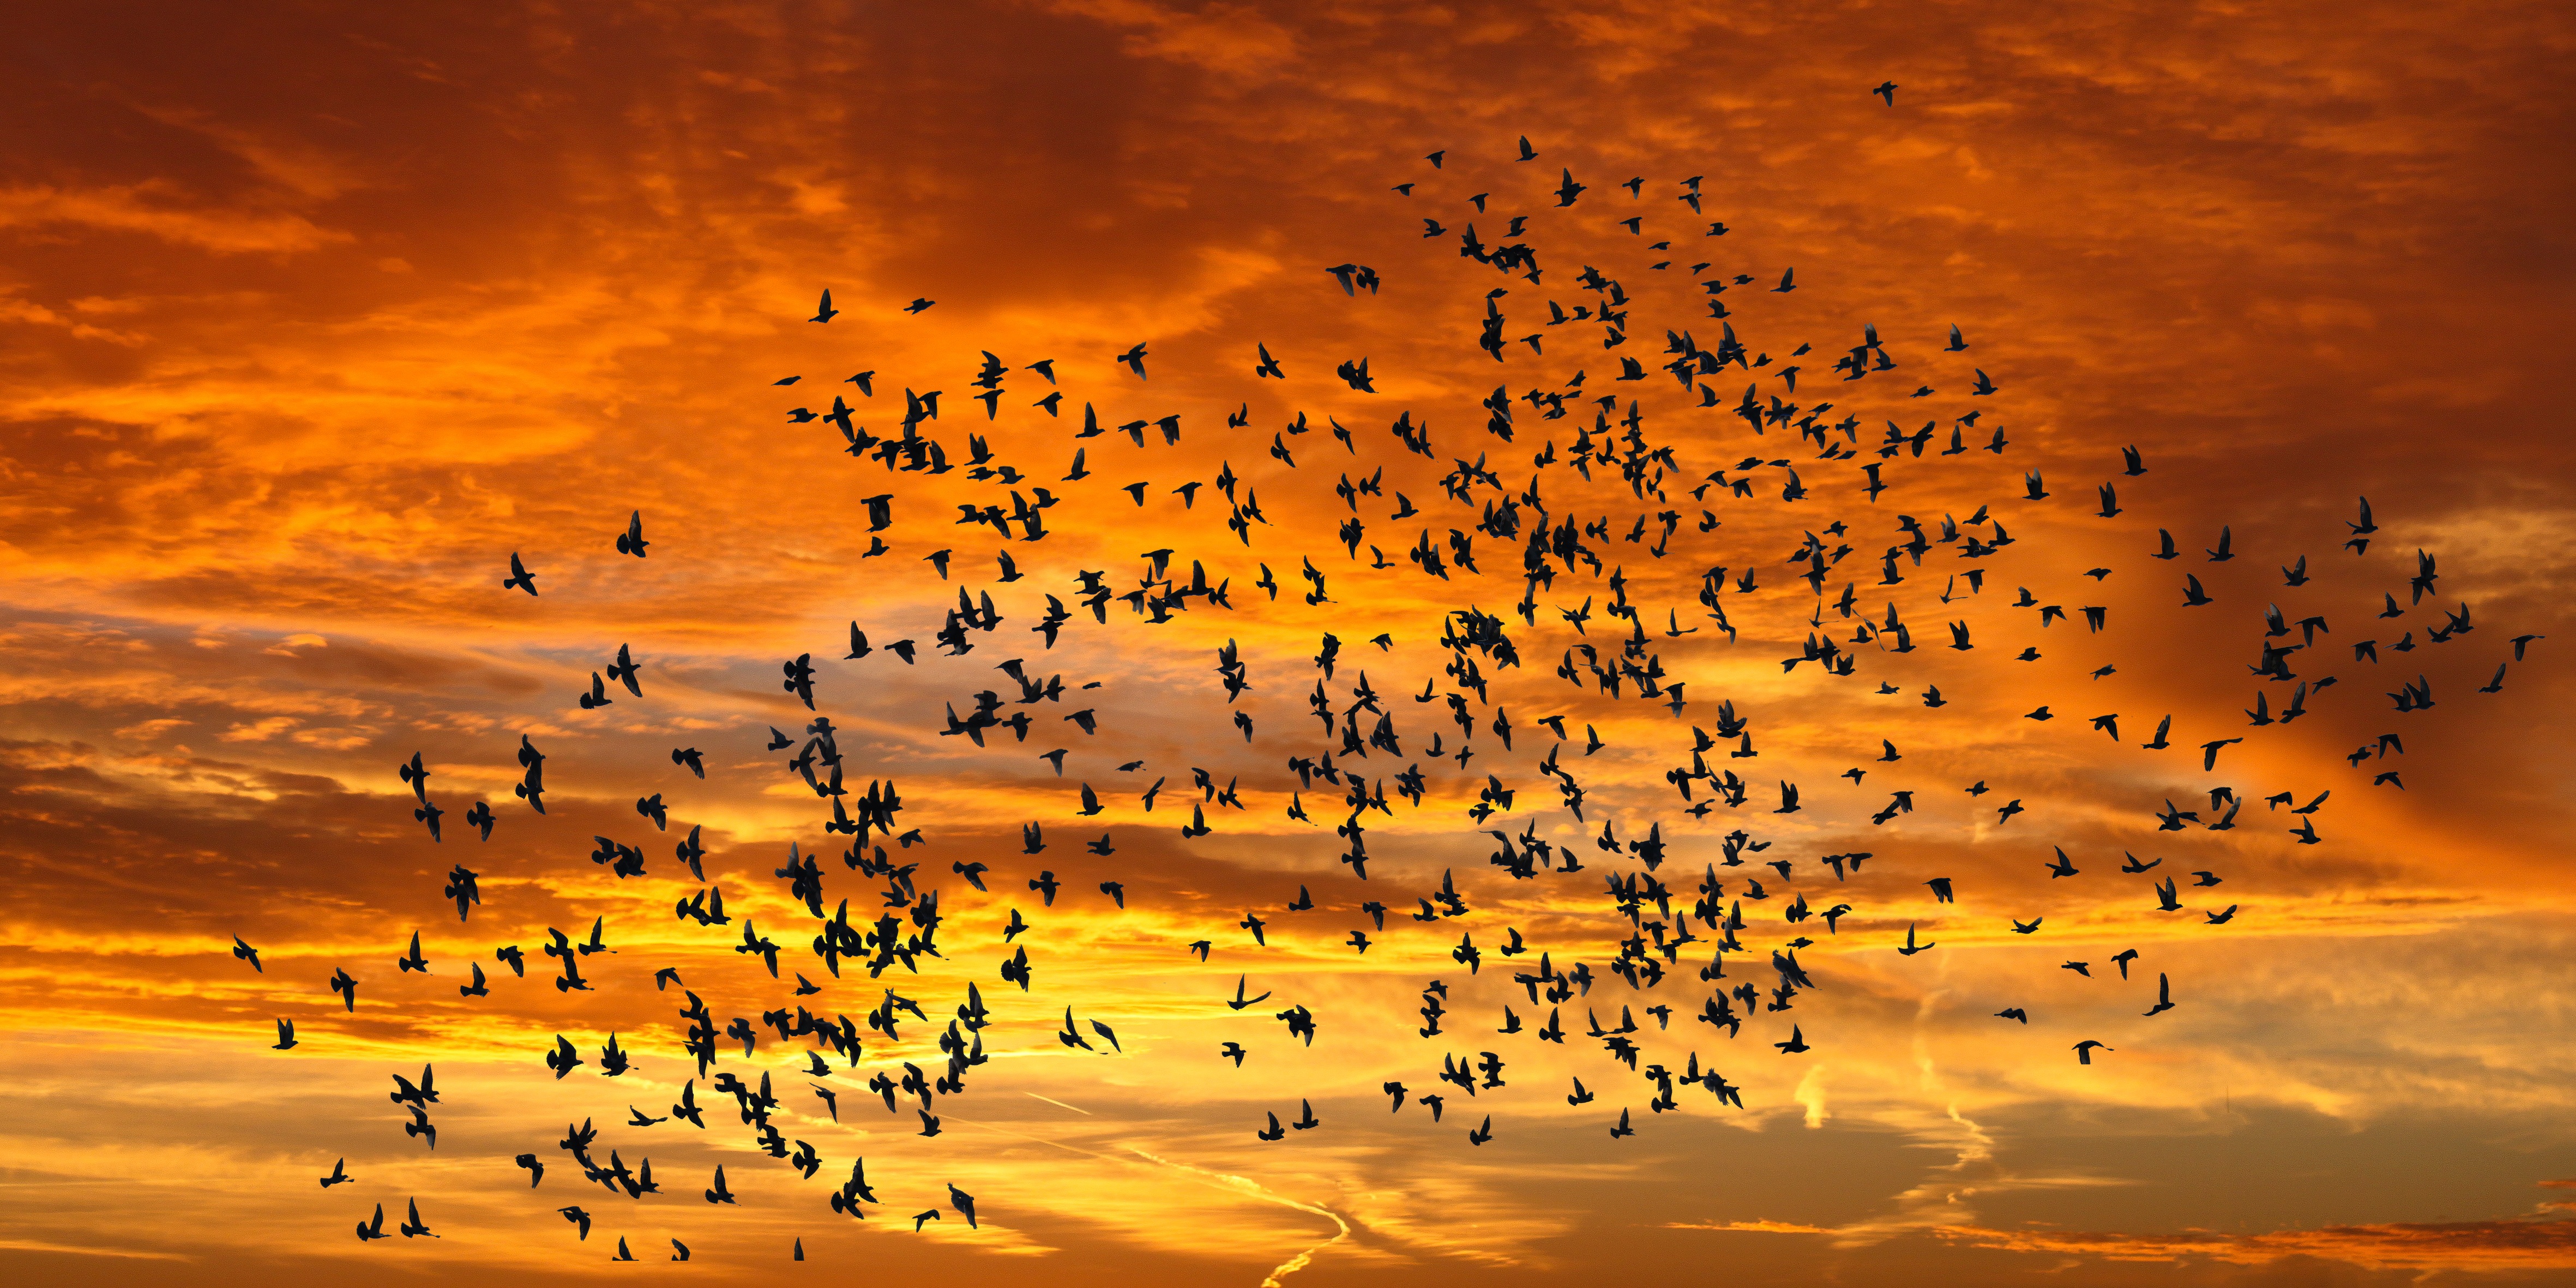 sunset, nature, birds, sky, clouds, silhouettes, flight Desktop Wallpaper